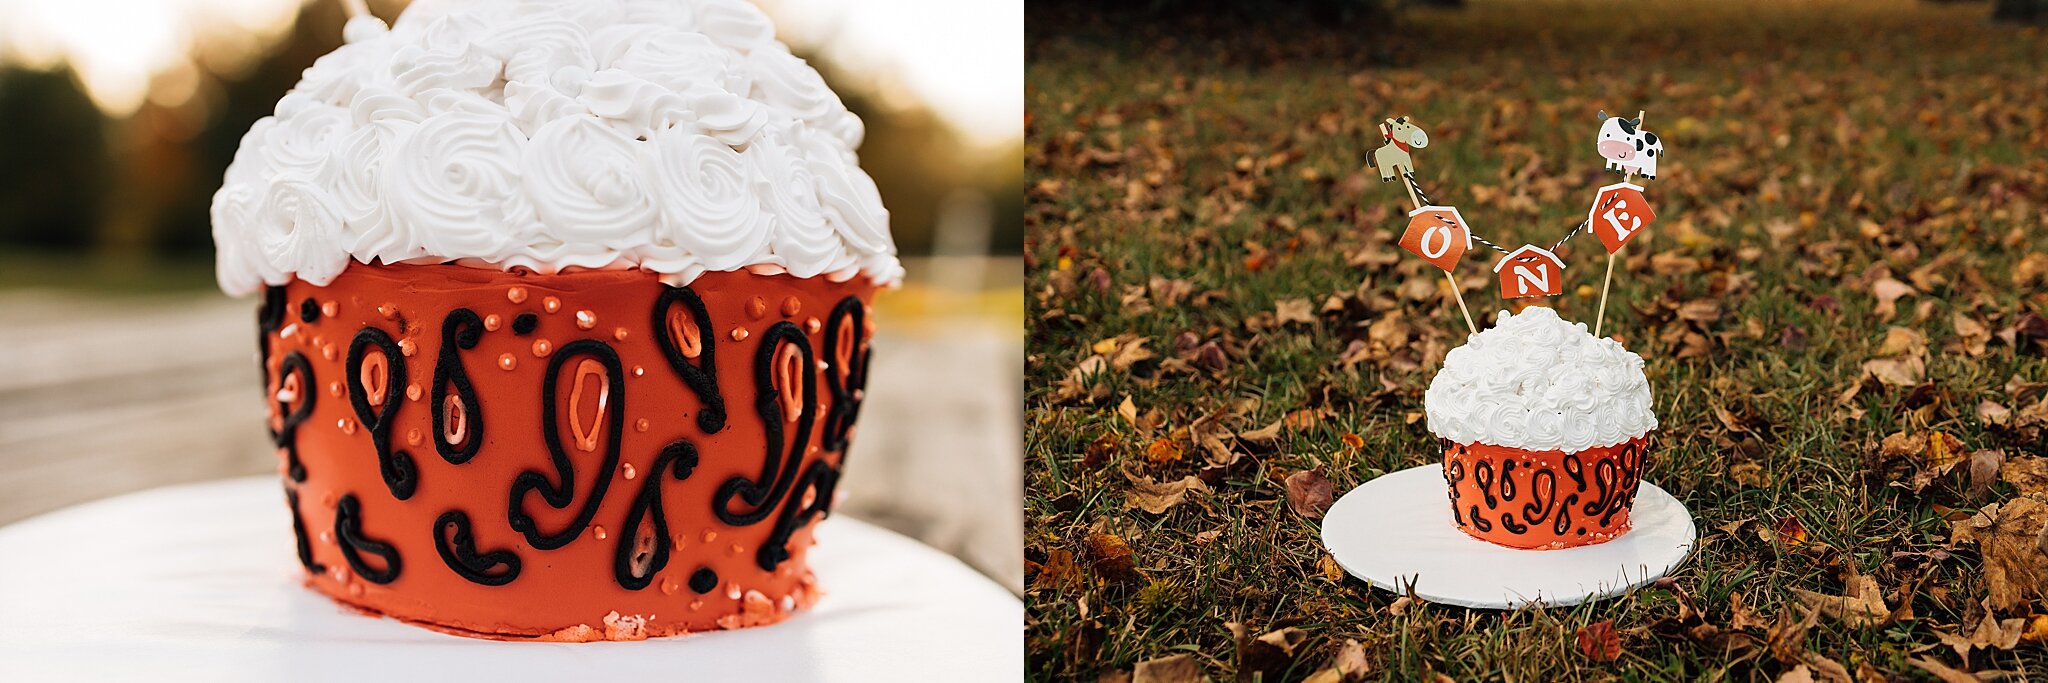 houston+smash+cake+photographer